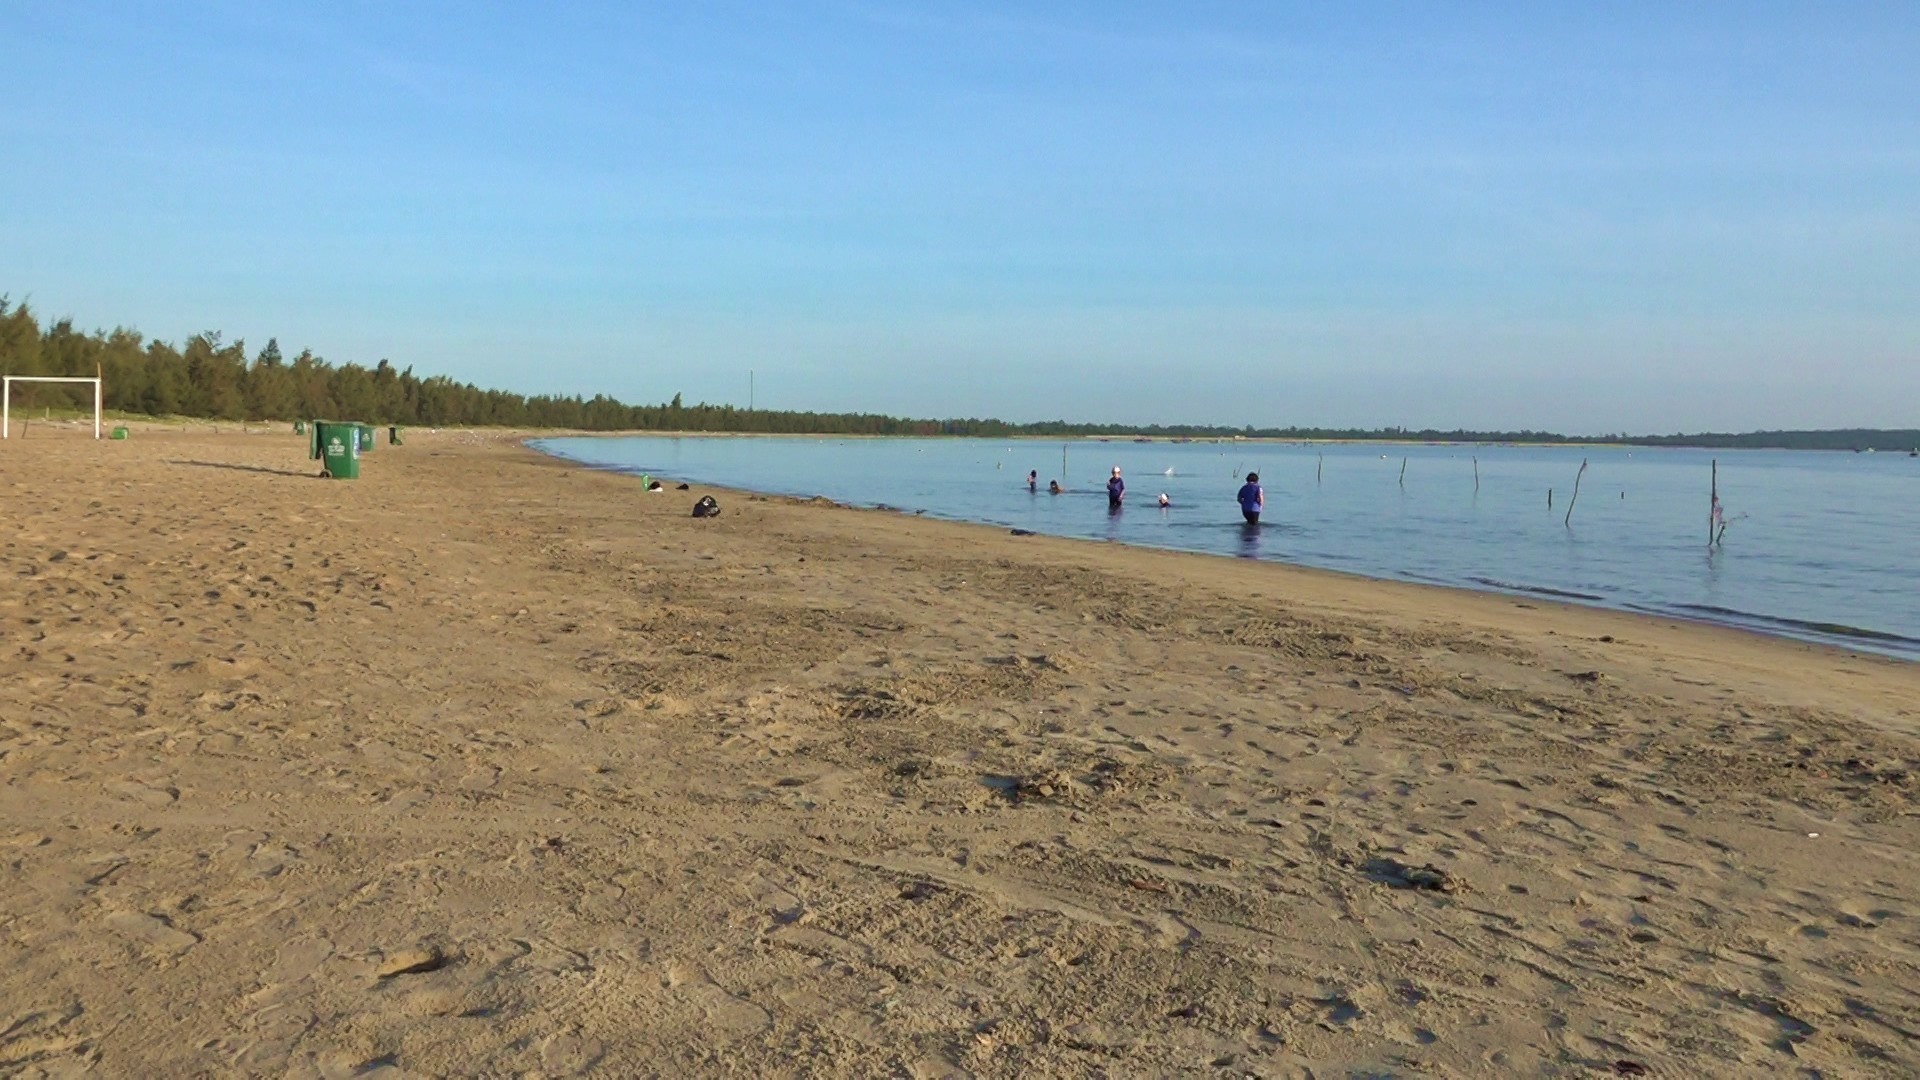 Nhờ có ý thức bảo vệ môi trường, bãi biển thôn Đông Tuần luôn sạch sẽ. Ảnh: H.Đ